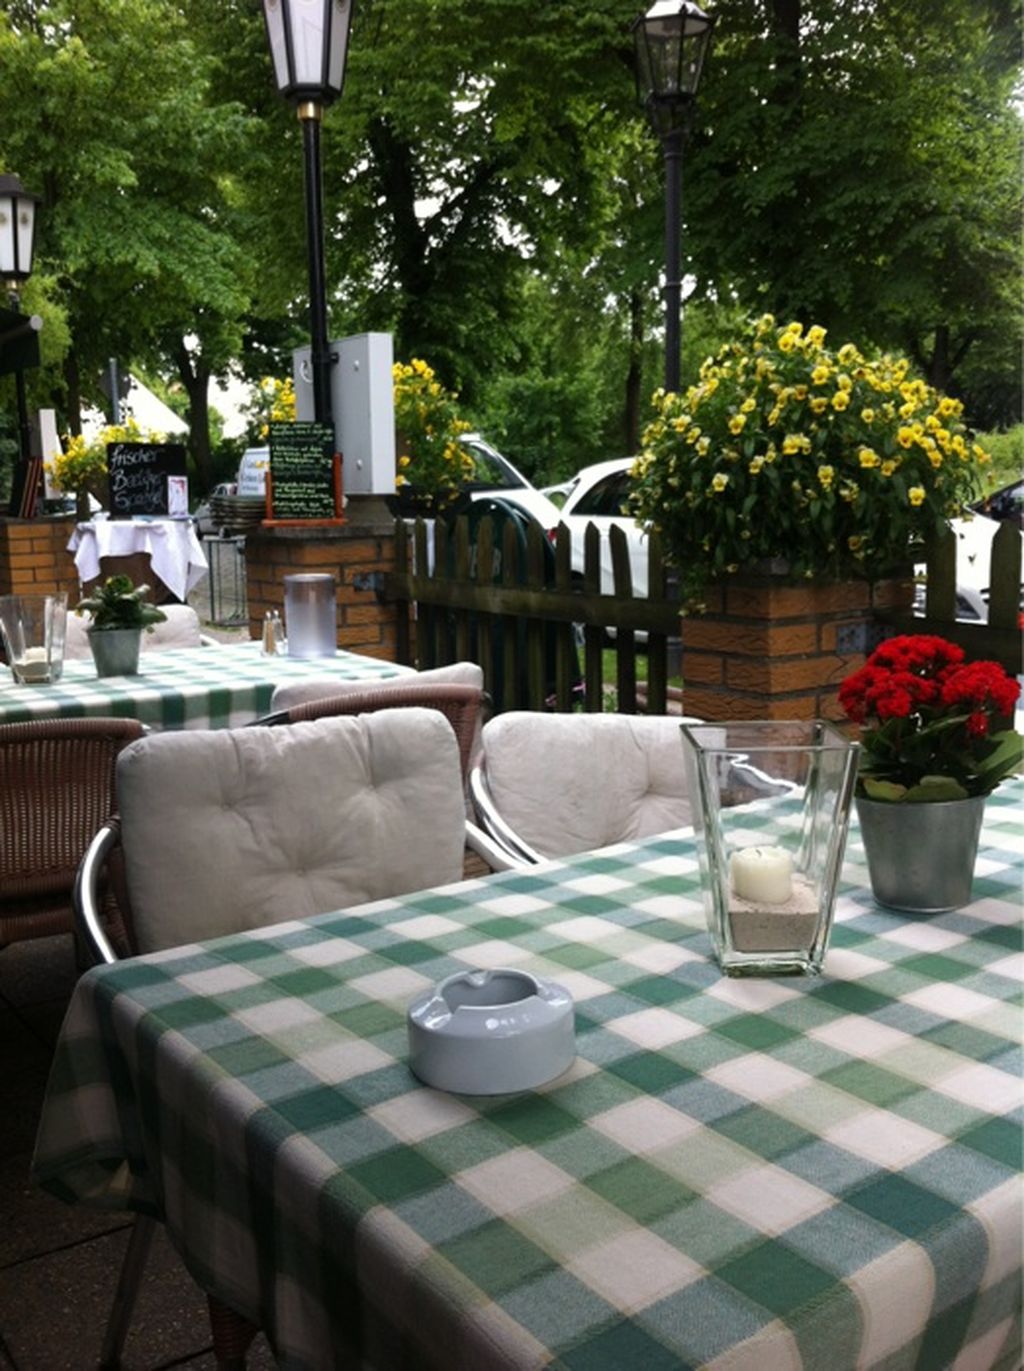 Nutzerfoto 1 Gasthof zur grünen Linde Inh. Grüne Linde Grundbesitz KG Restaurant